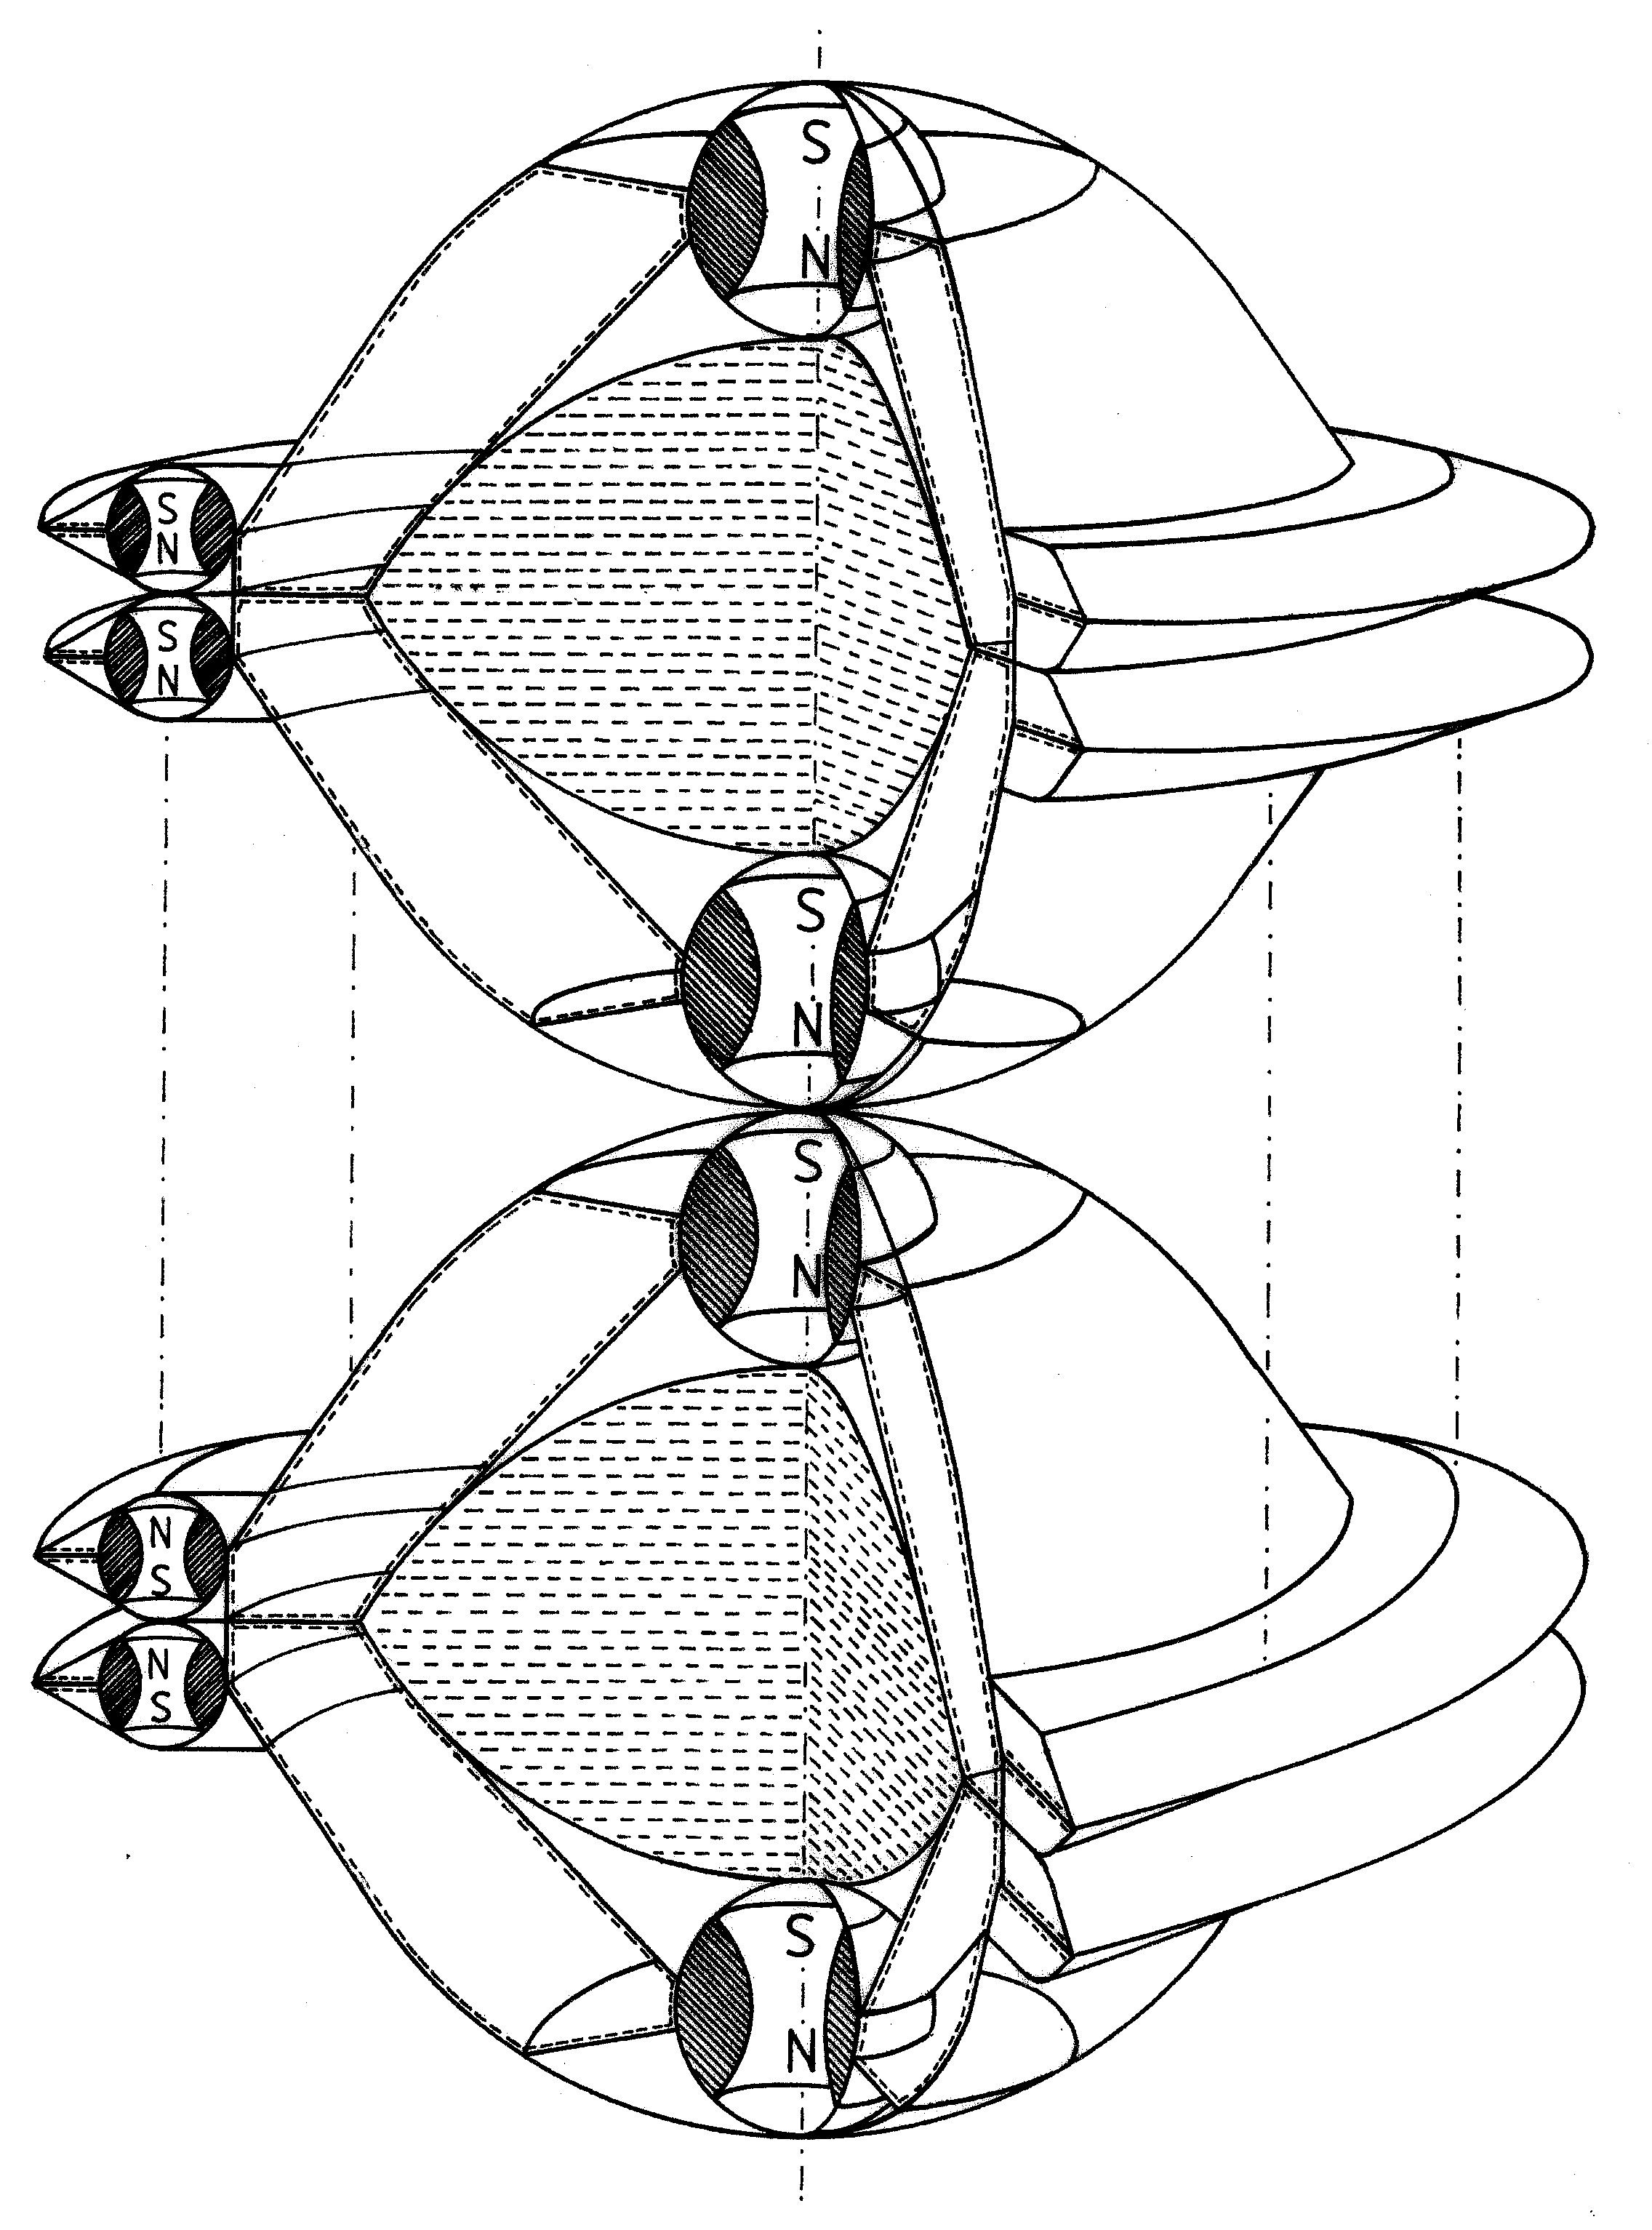 Fig. G12